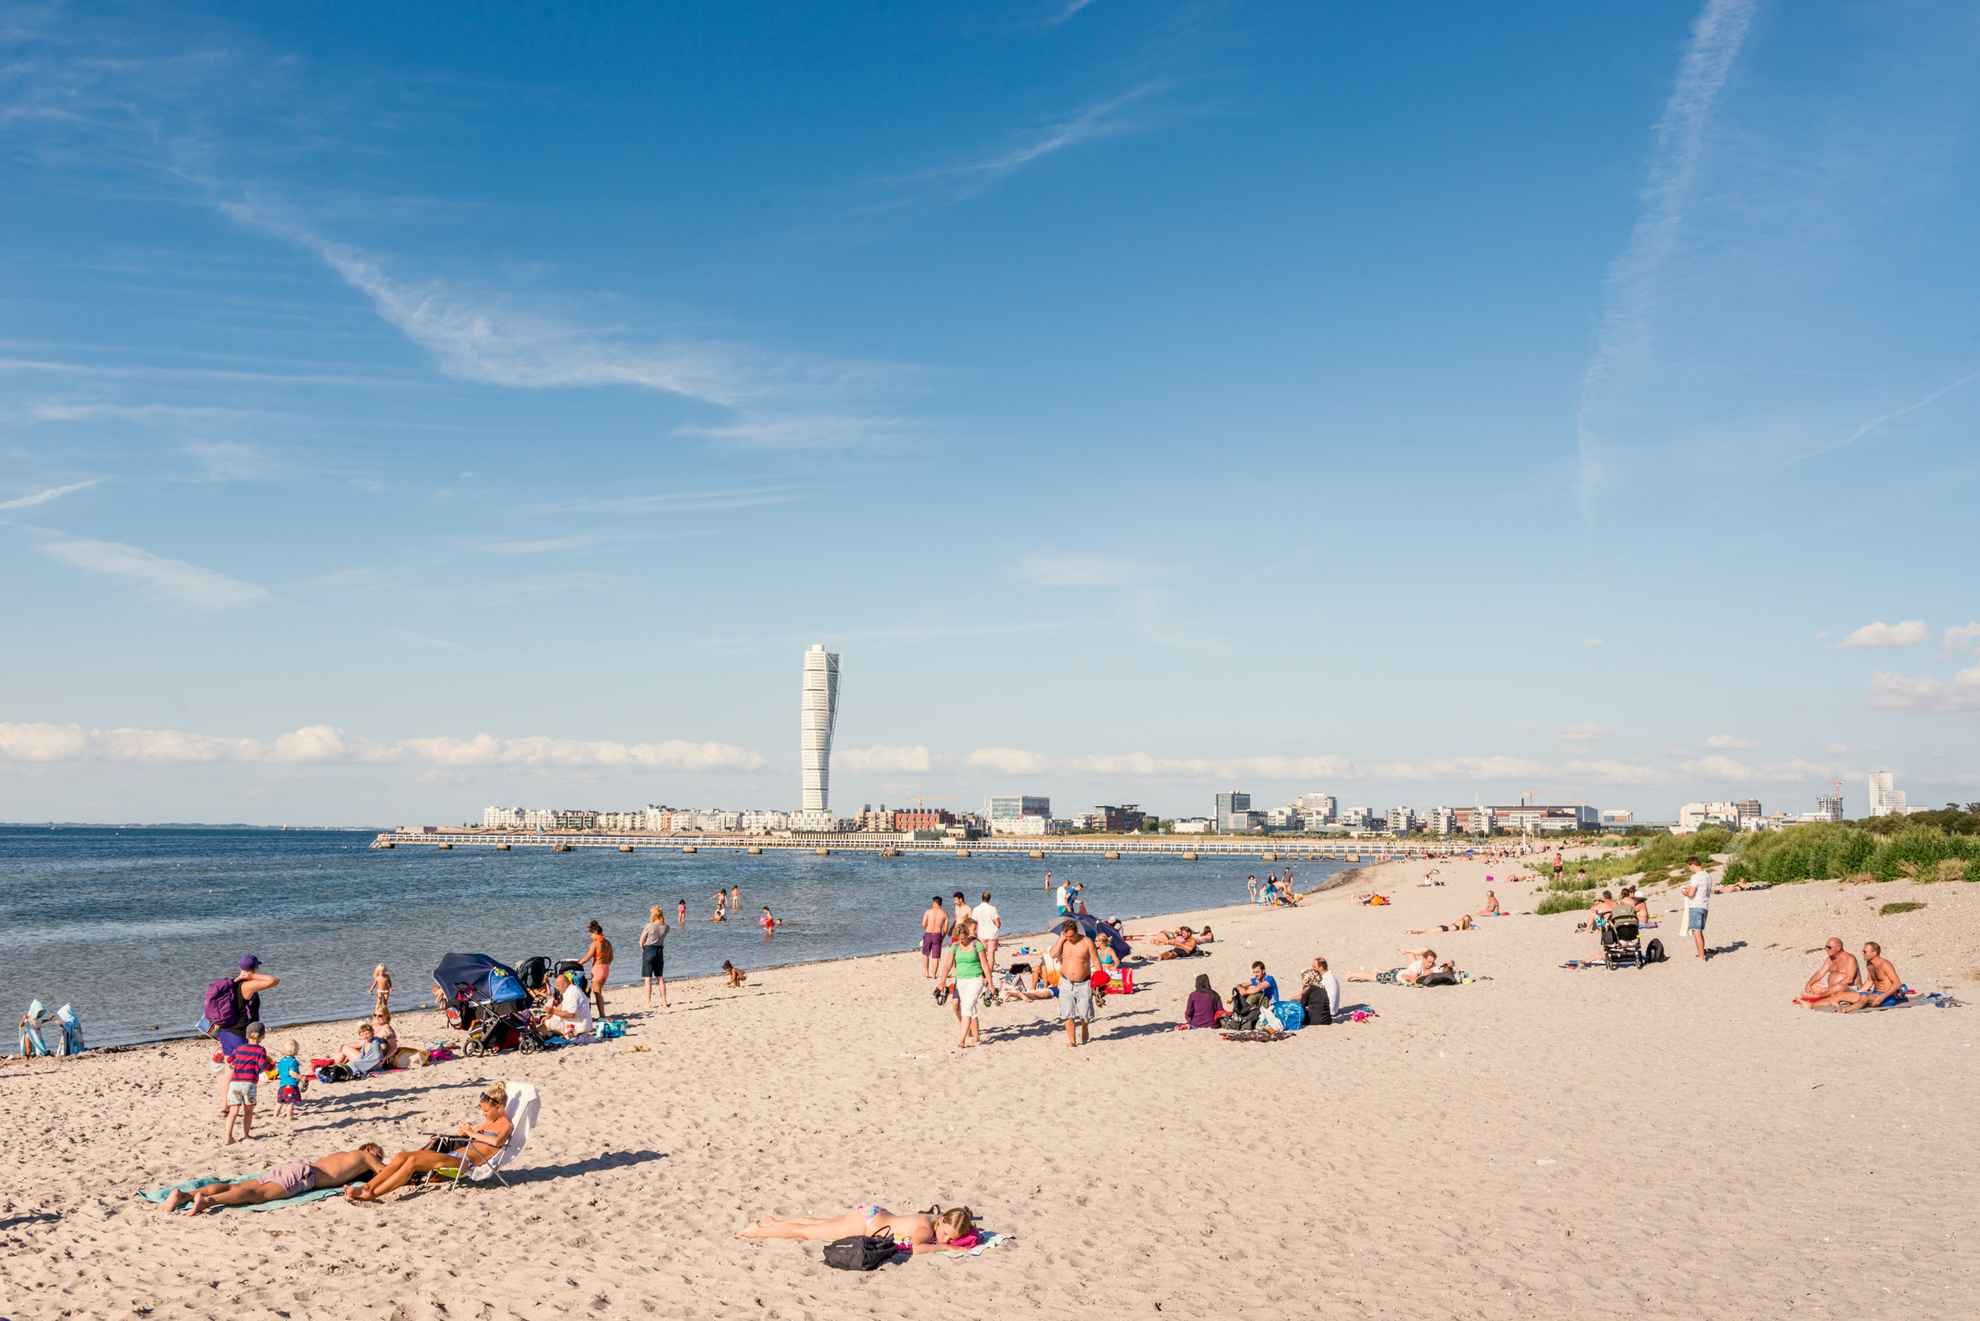 Mensen genieten op een strand in Malmö. Aan de horizon kun je het gebouw "Turning Torso" zien.